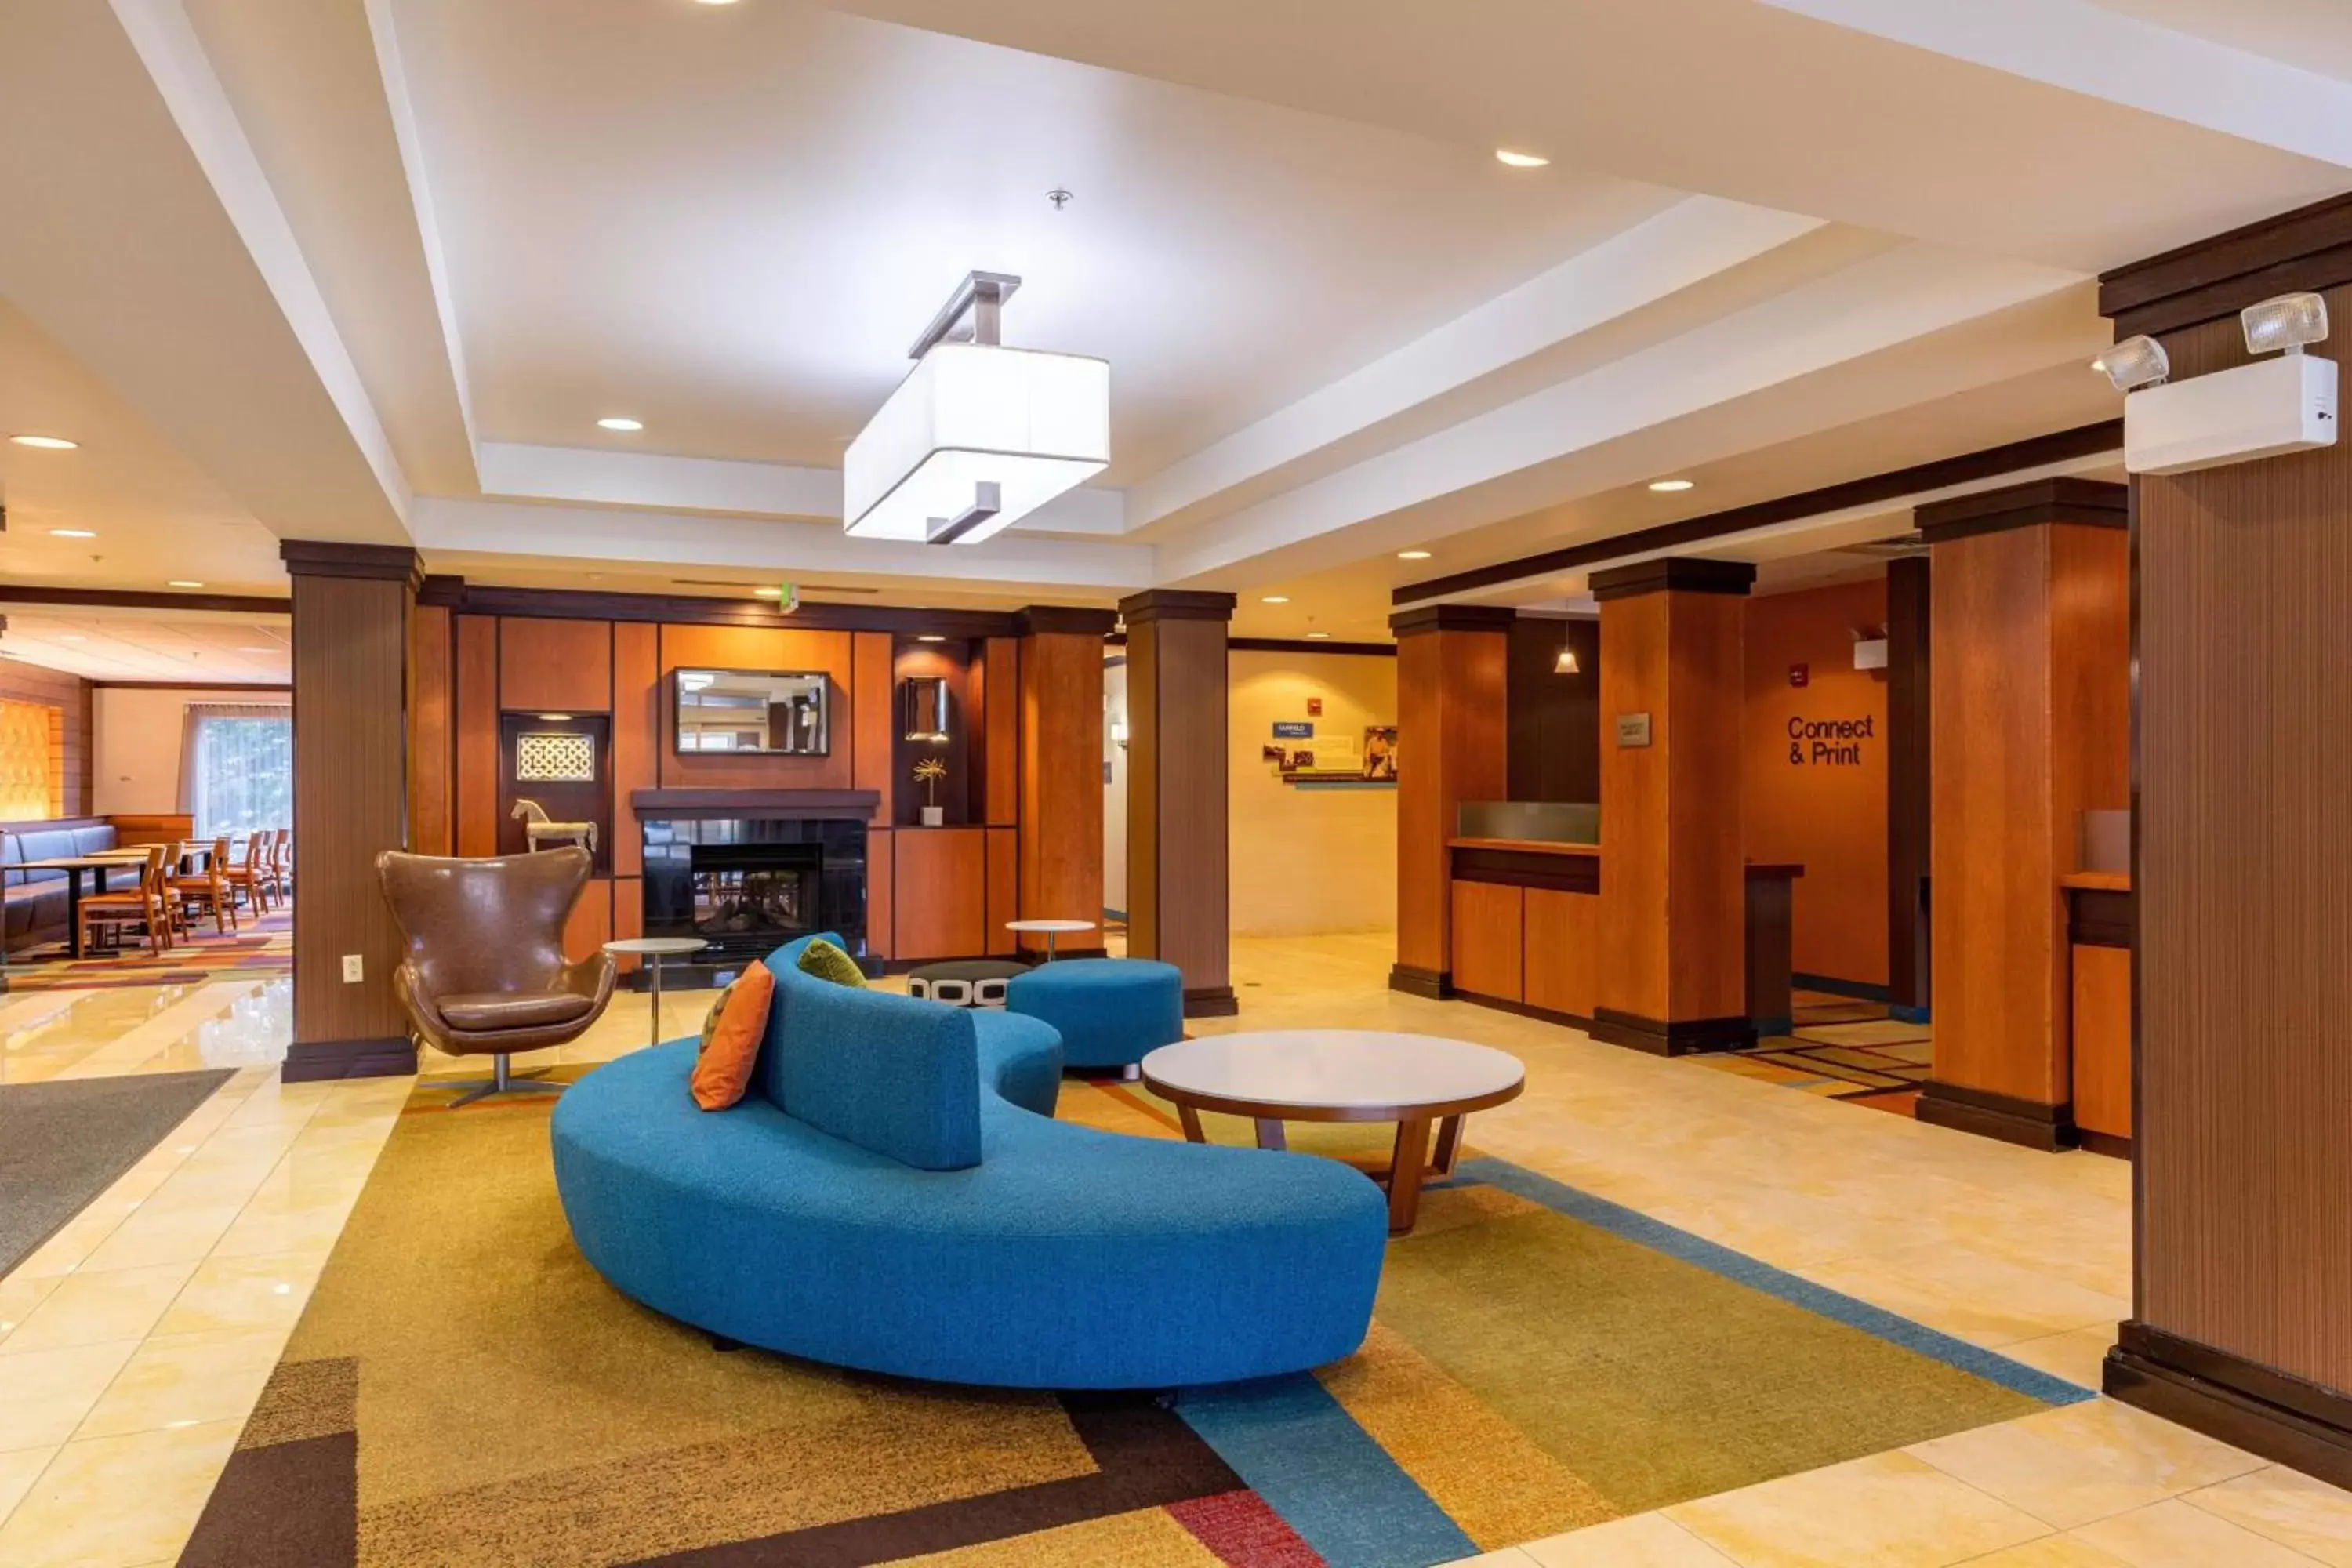 Lobby or reception, Lobby/Reception in Fairfield Inn & Suites Carlisle